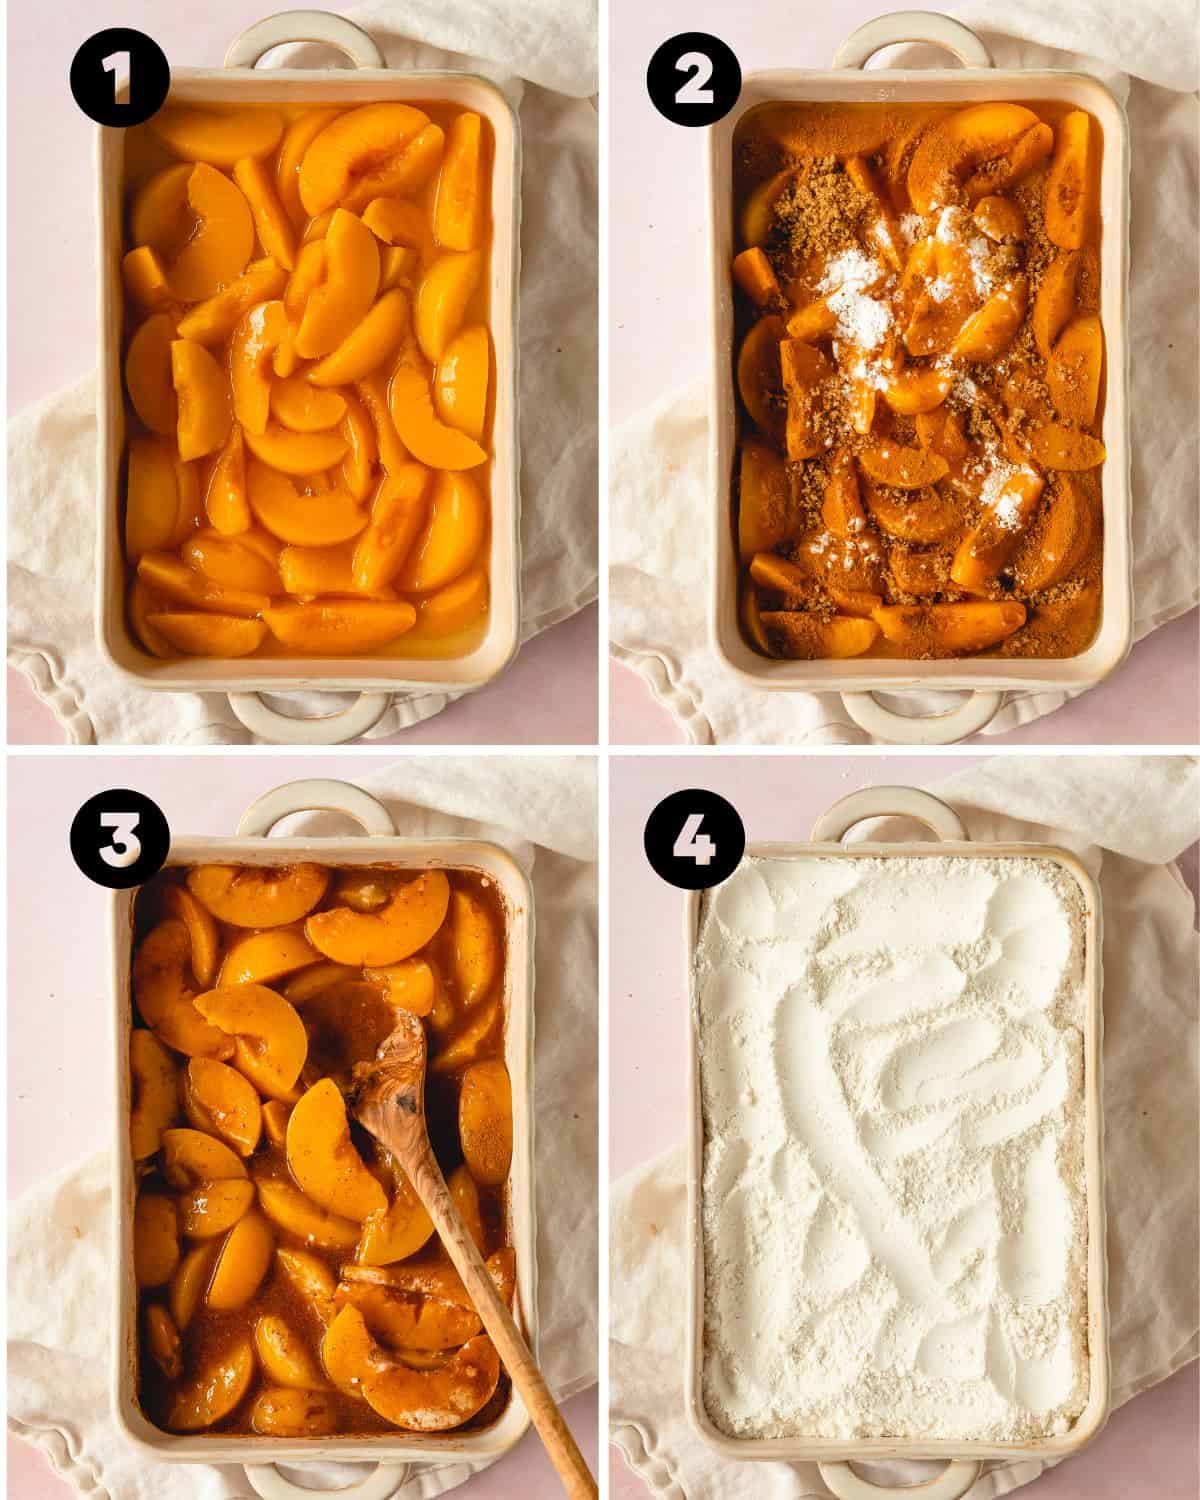 Peach Cobbler with Cake Mix Recipe steps 1-4